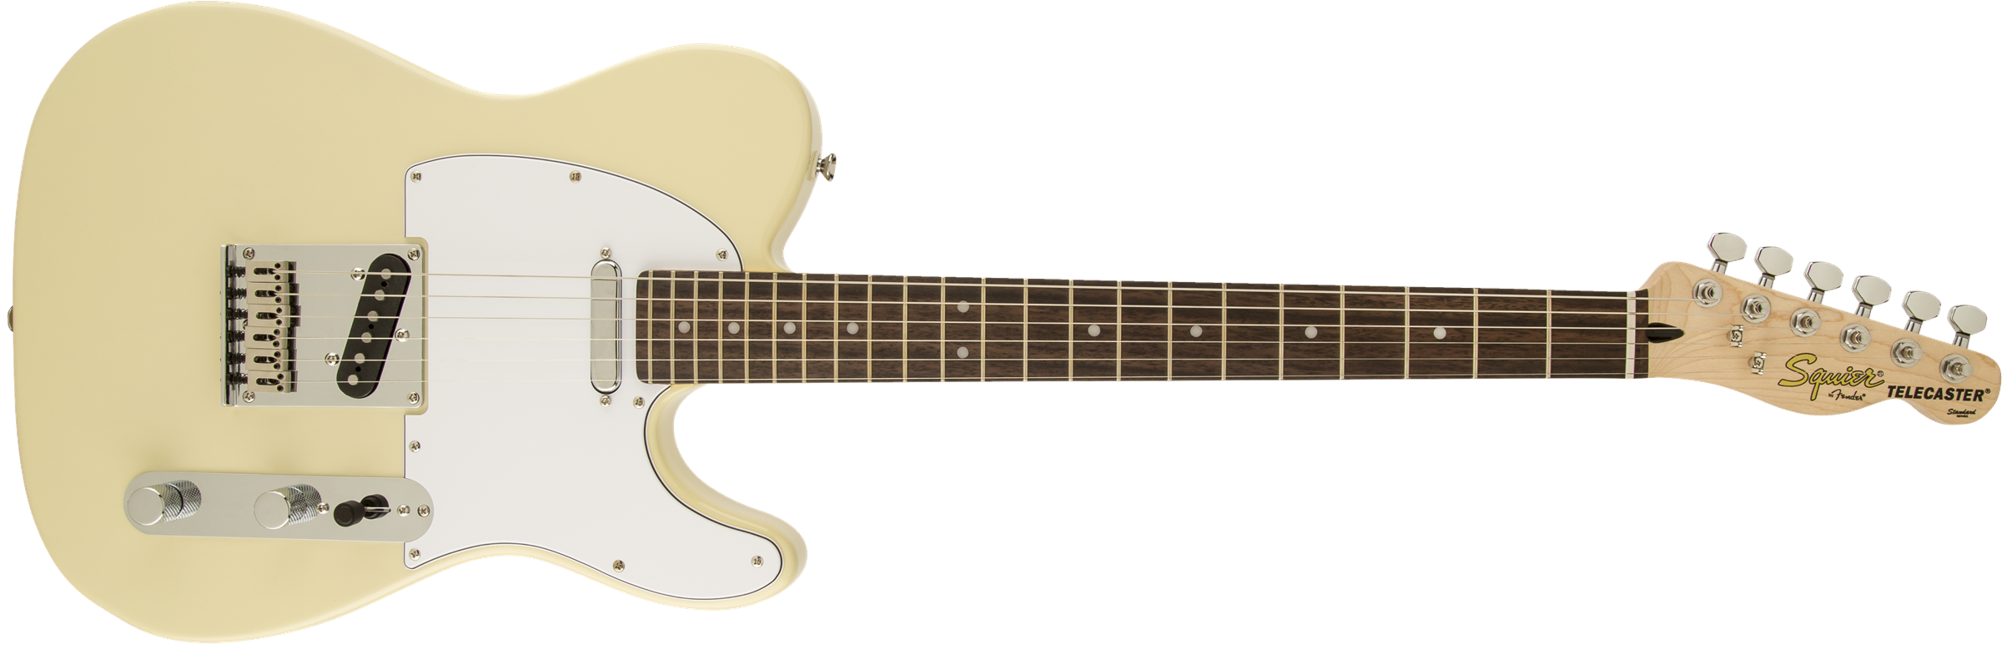 Squier By Fender - Standard Telecaster - Elektrisk Guitar (Vintage Blond)